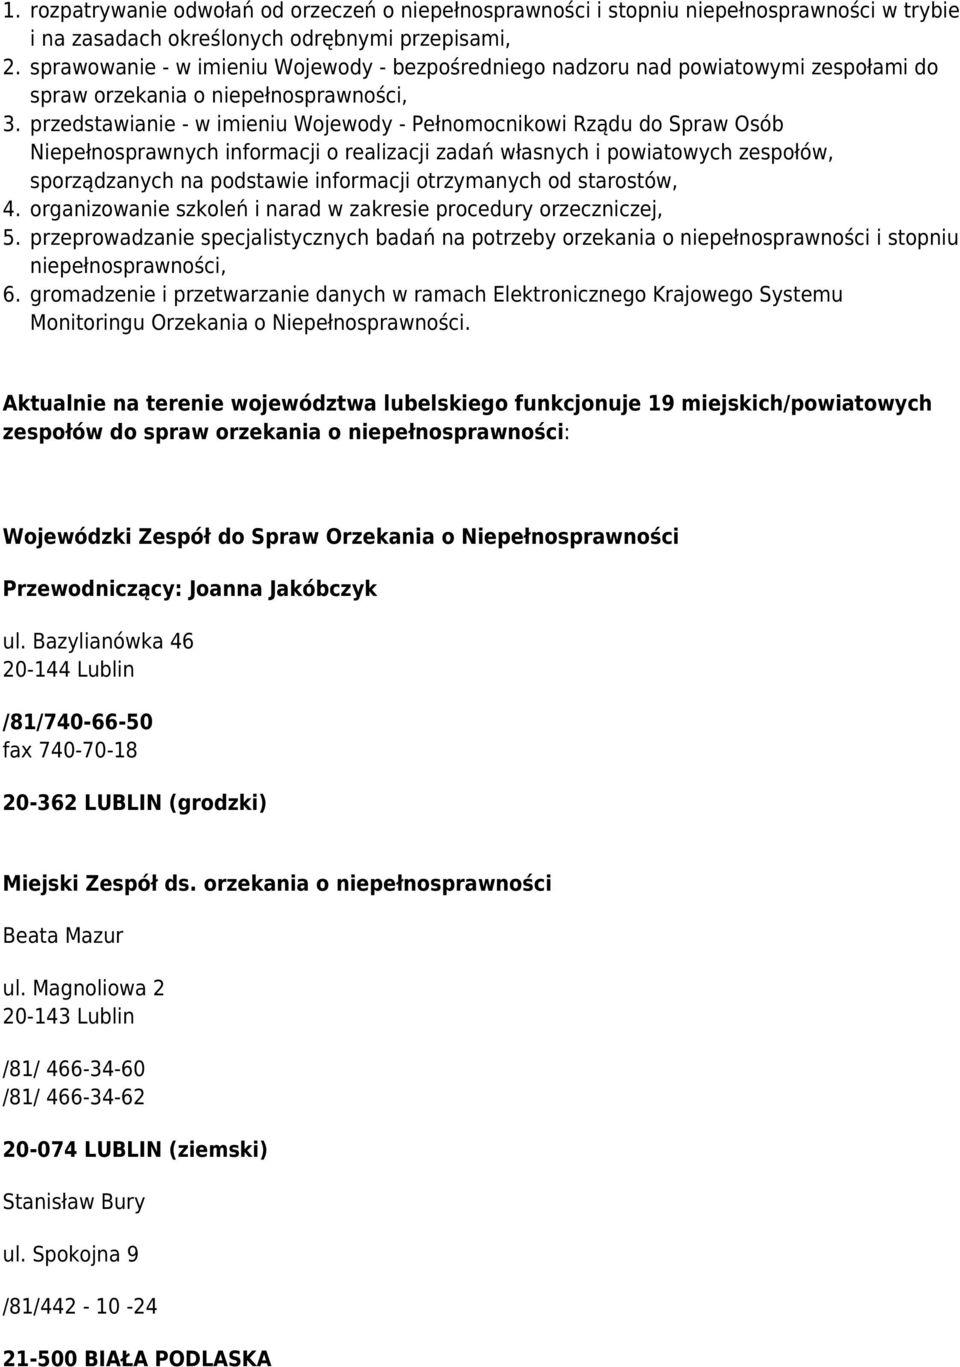 przedstawianie - w imieniu Wojewody - Pełnomocnikowi Rządu do Spraw Osób Niepełnosprawnych informacji o realizacji zadań własnych i powiatowych zespołów, sporządzanych na podstawie informacji